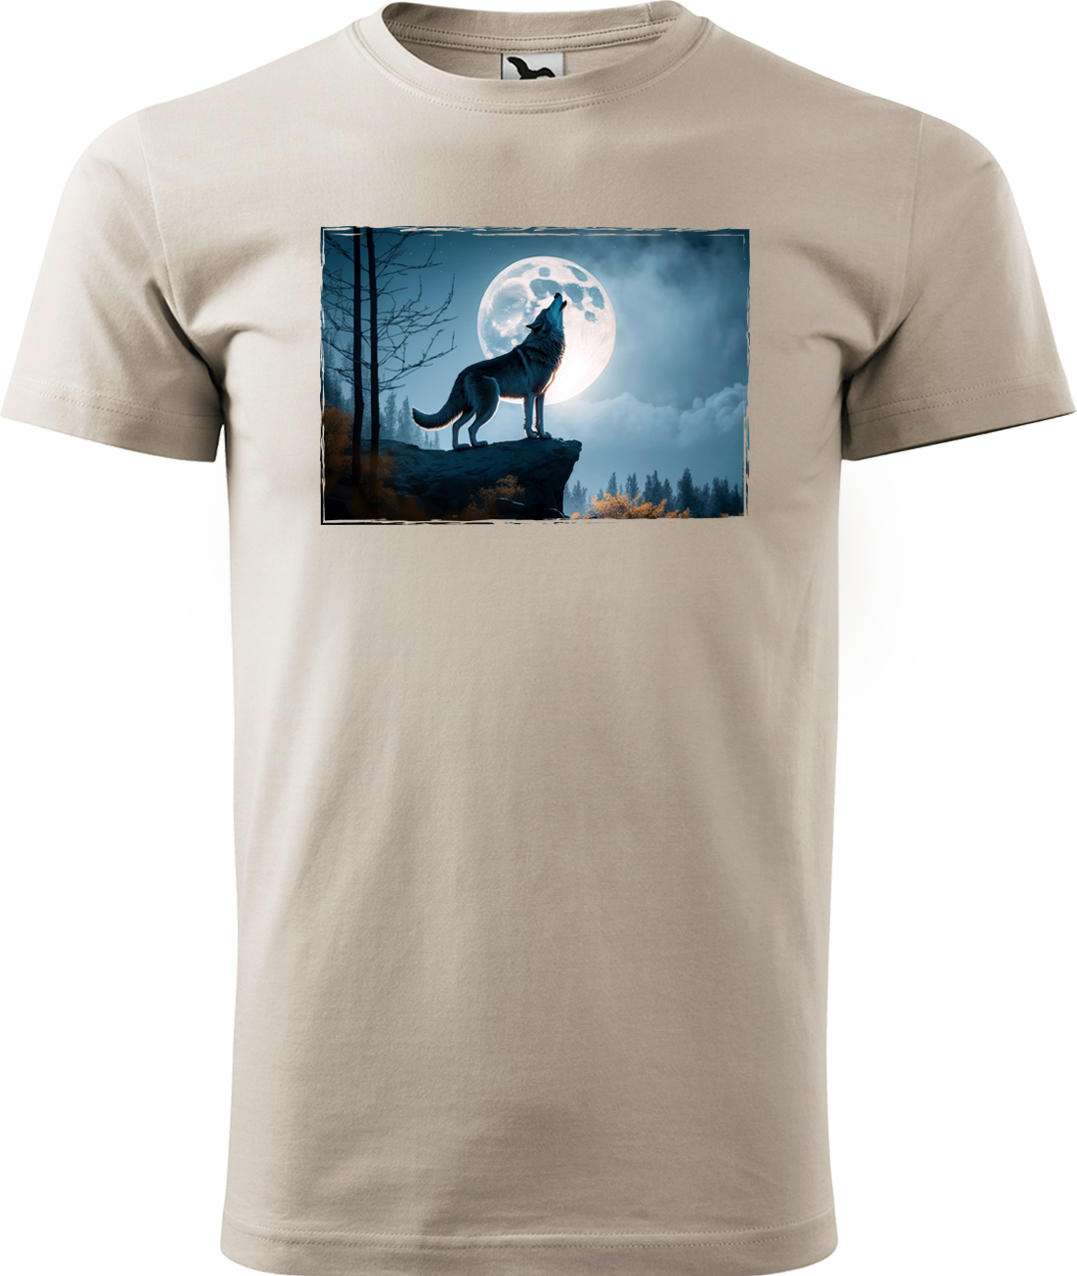 Pánské tričko s vlkem - Vyjící vlk Velikost: S, Barva: Béžová (51), Střih: pánský